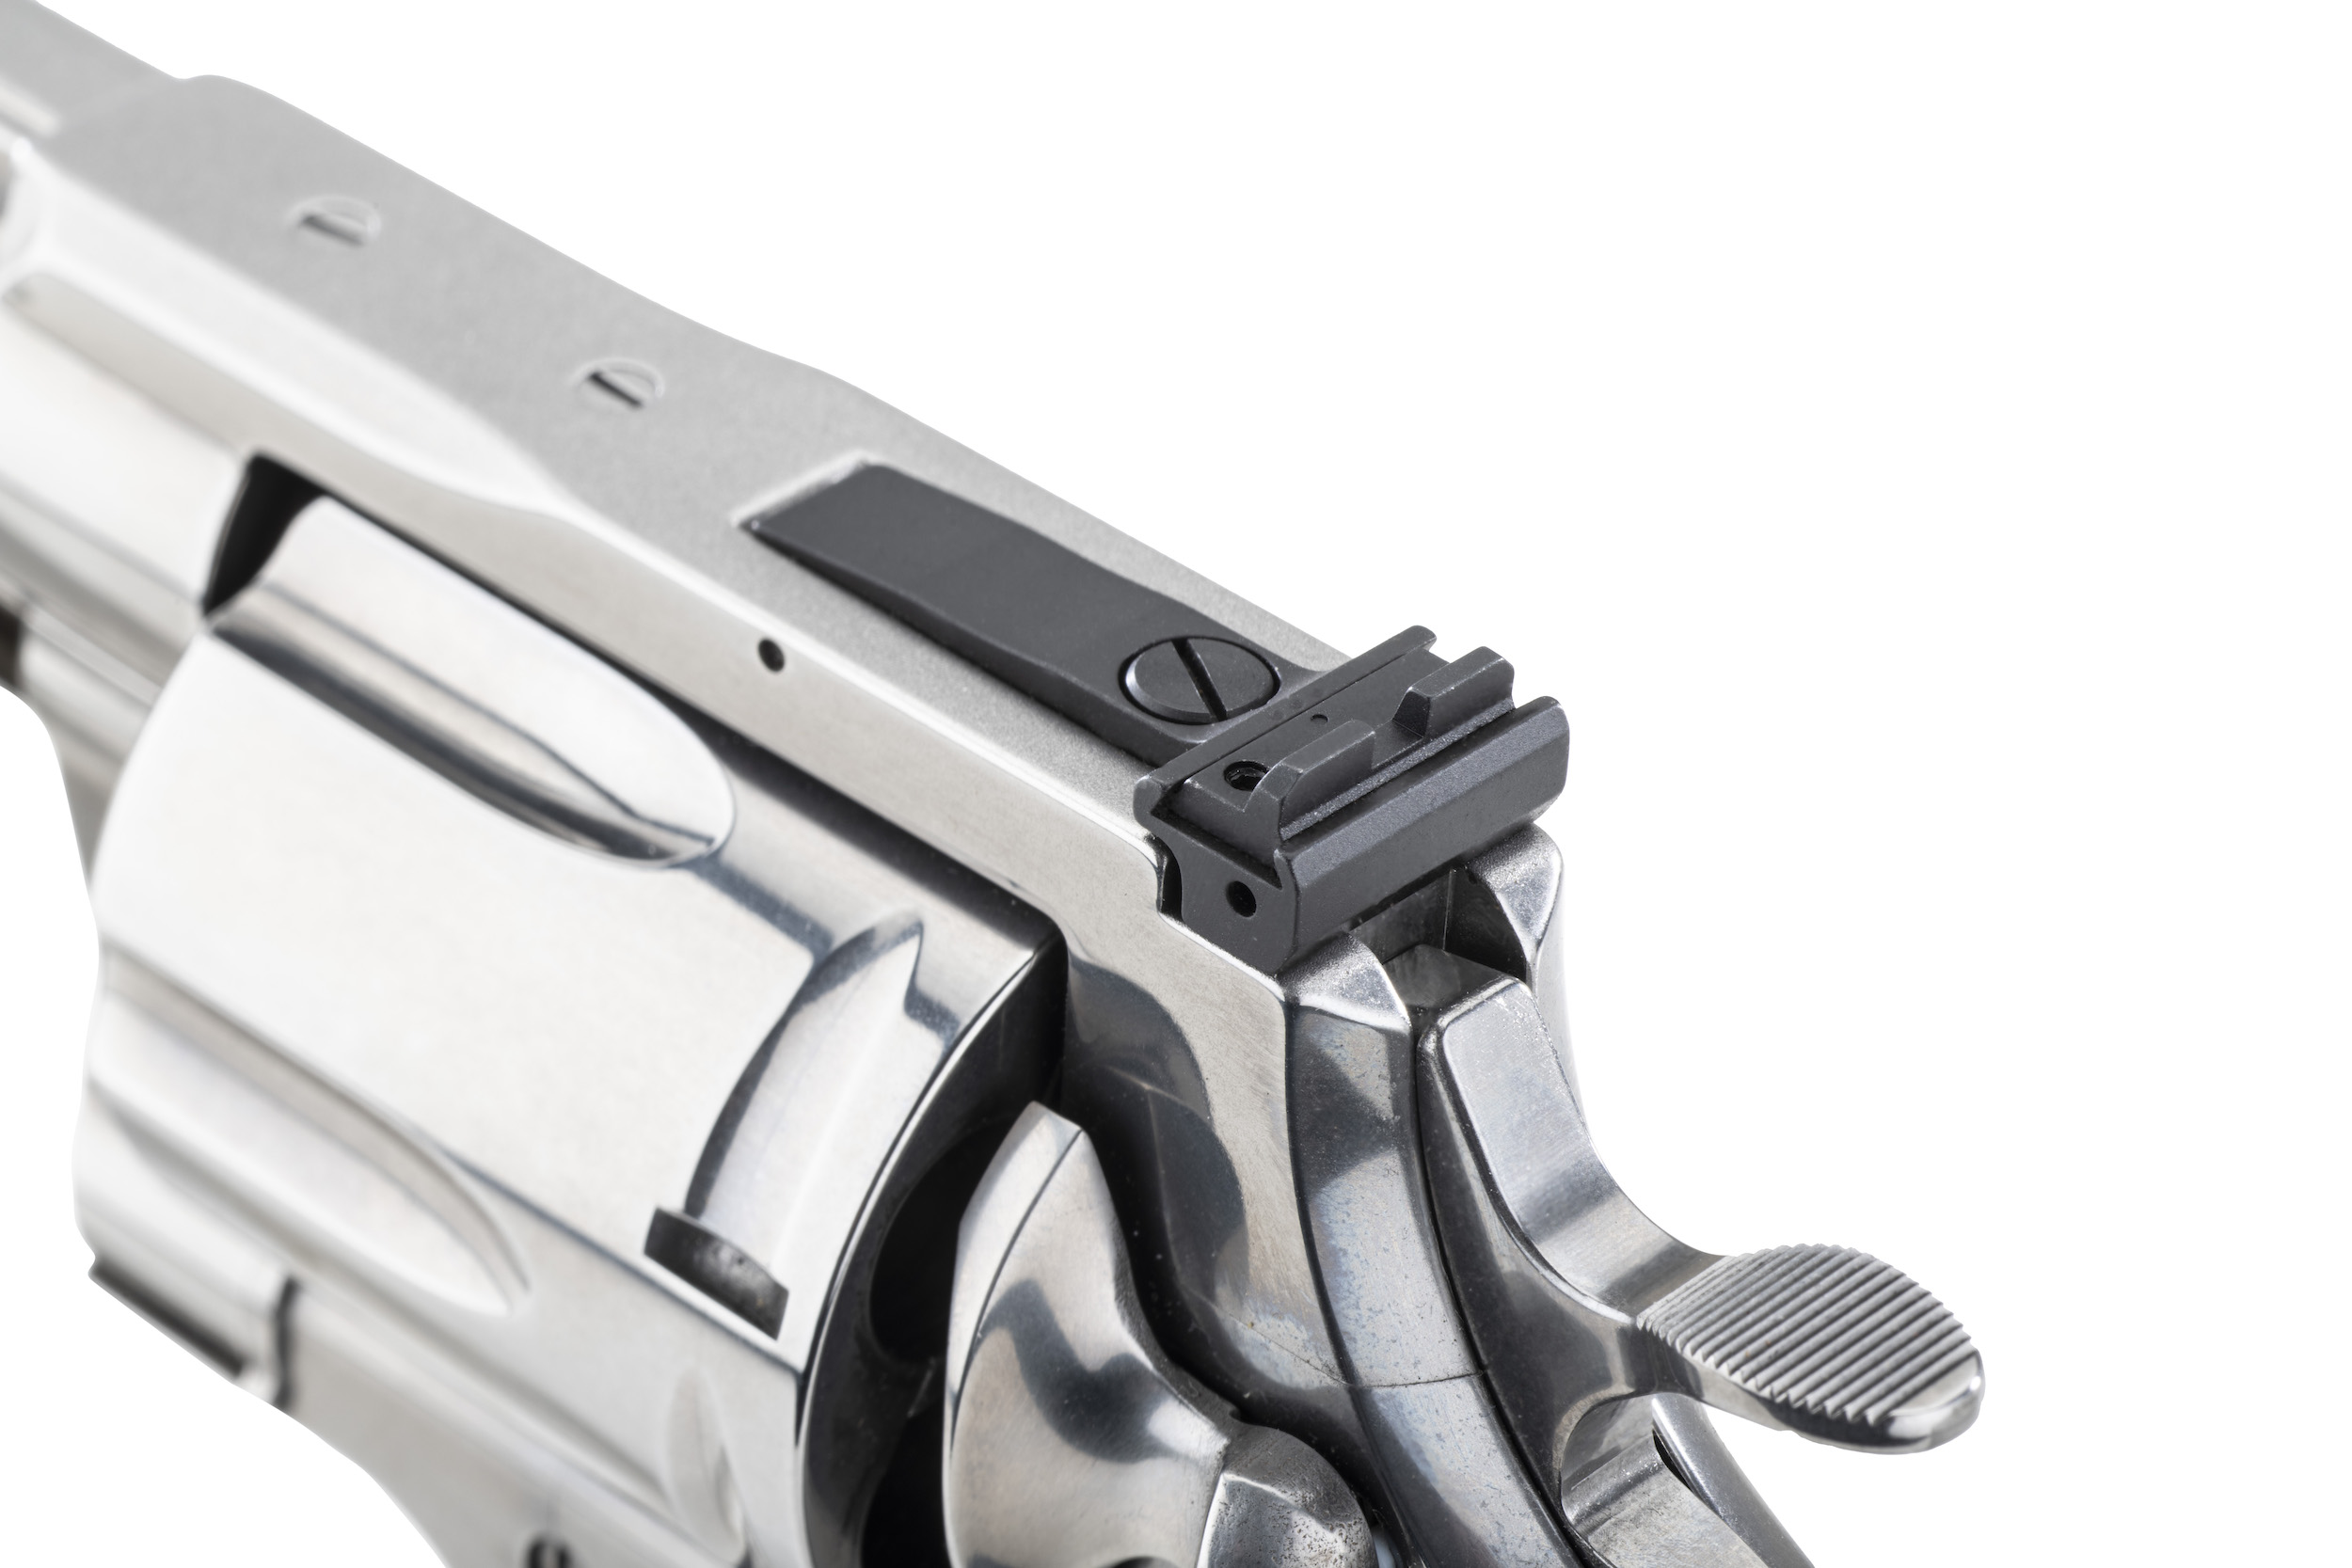 Colt Anaconda Revolver Adjustable Rear Sight